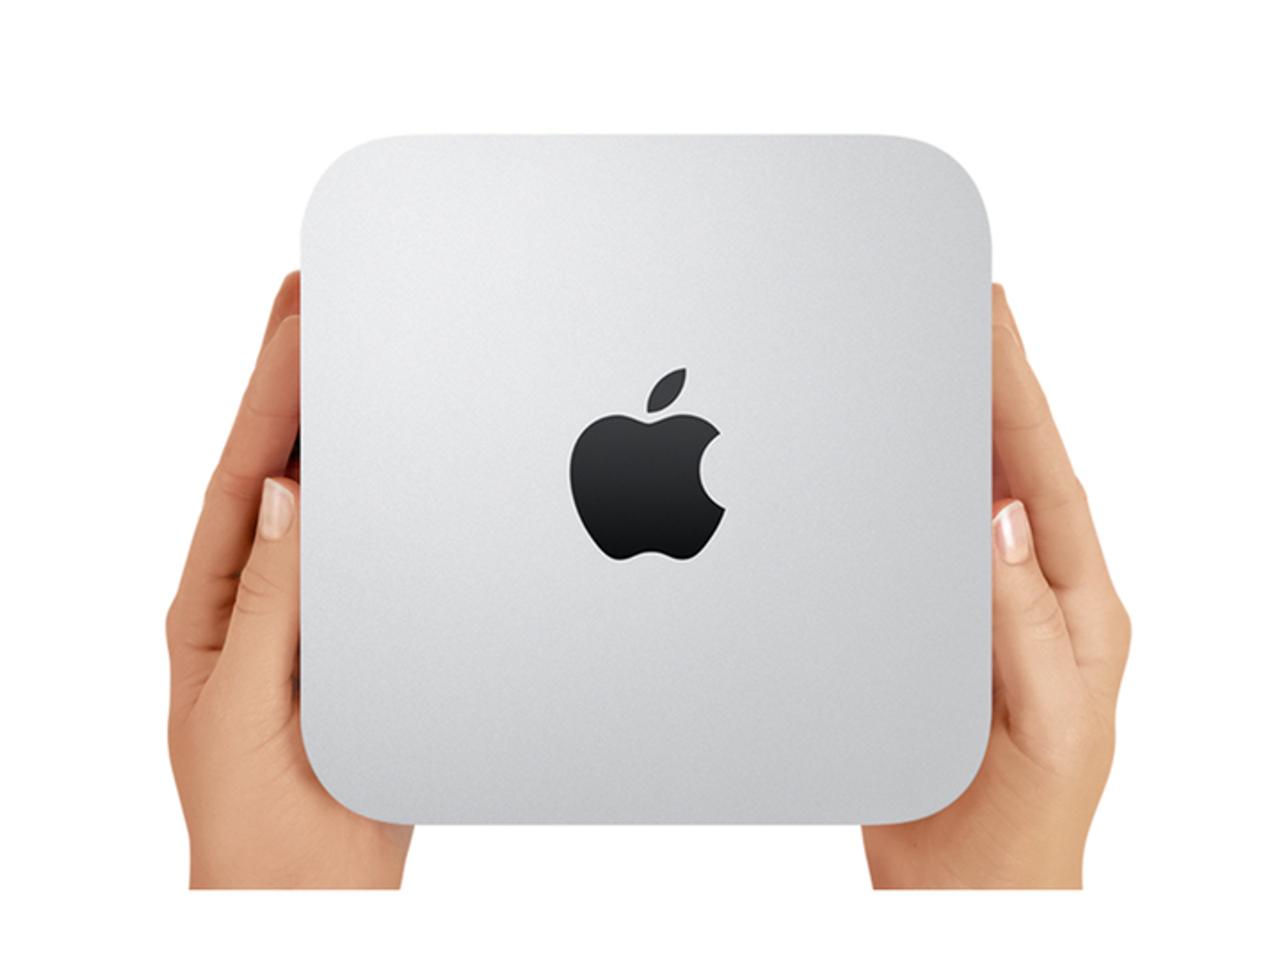 今年はMac miniがアップデートする!? iPad Proは11インチに進化か